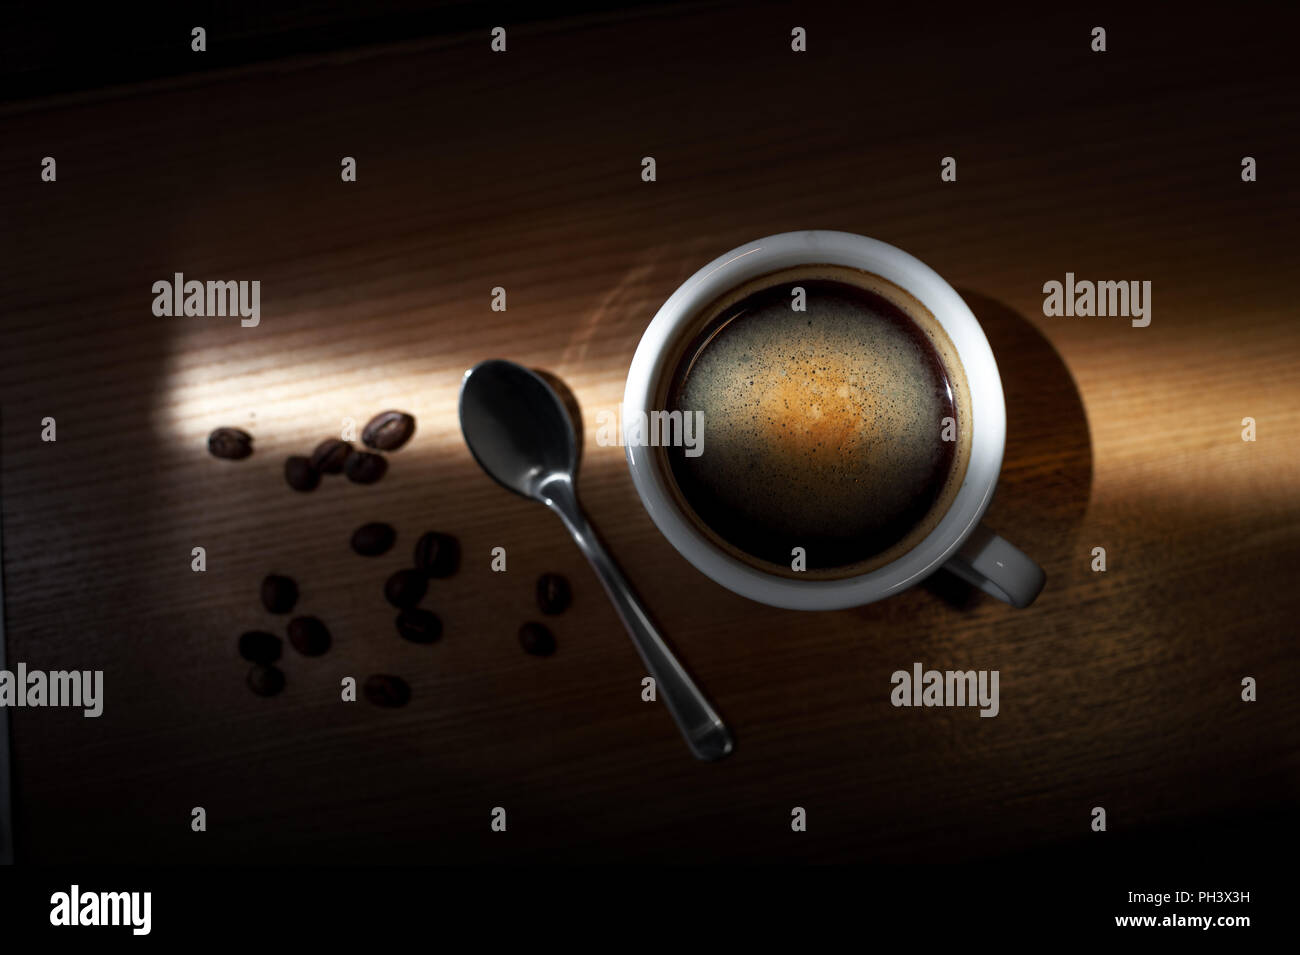 Heißer Kaffee Cappuccino Tasse mit Milch Schaum auf Holz Tisch Hintergrund Stockfoto